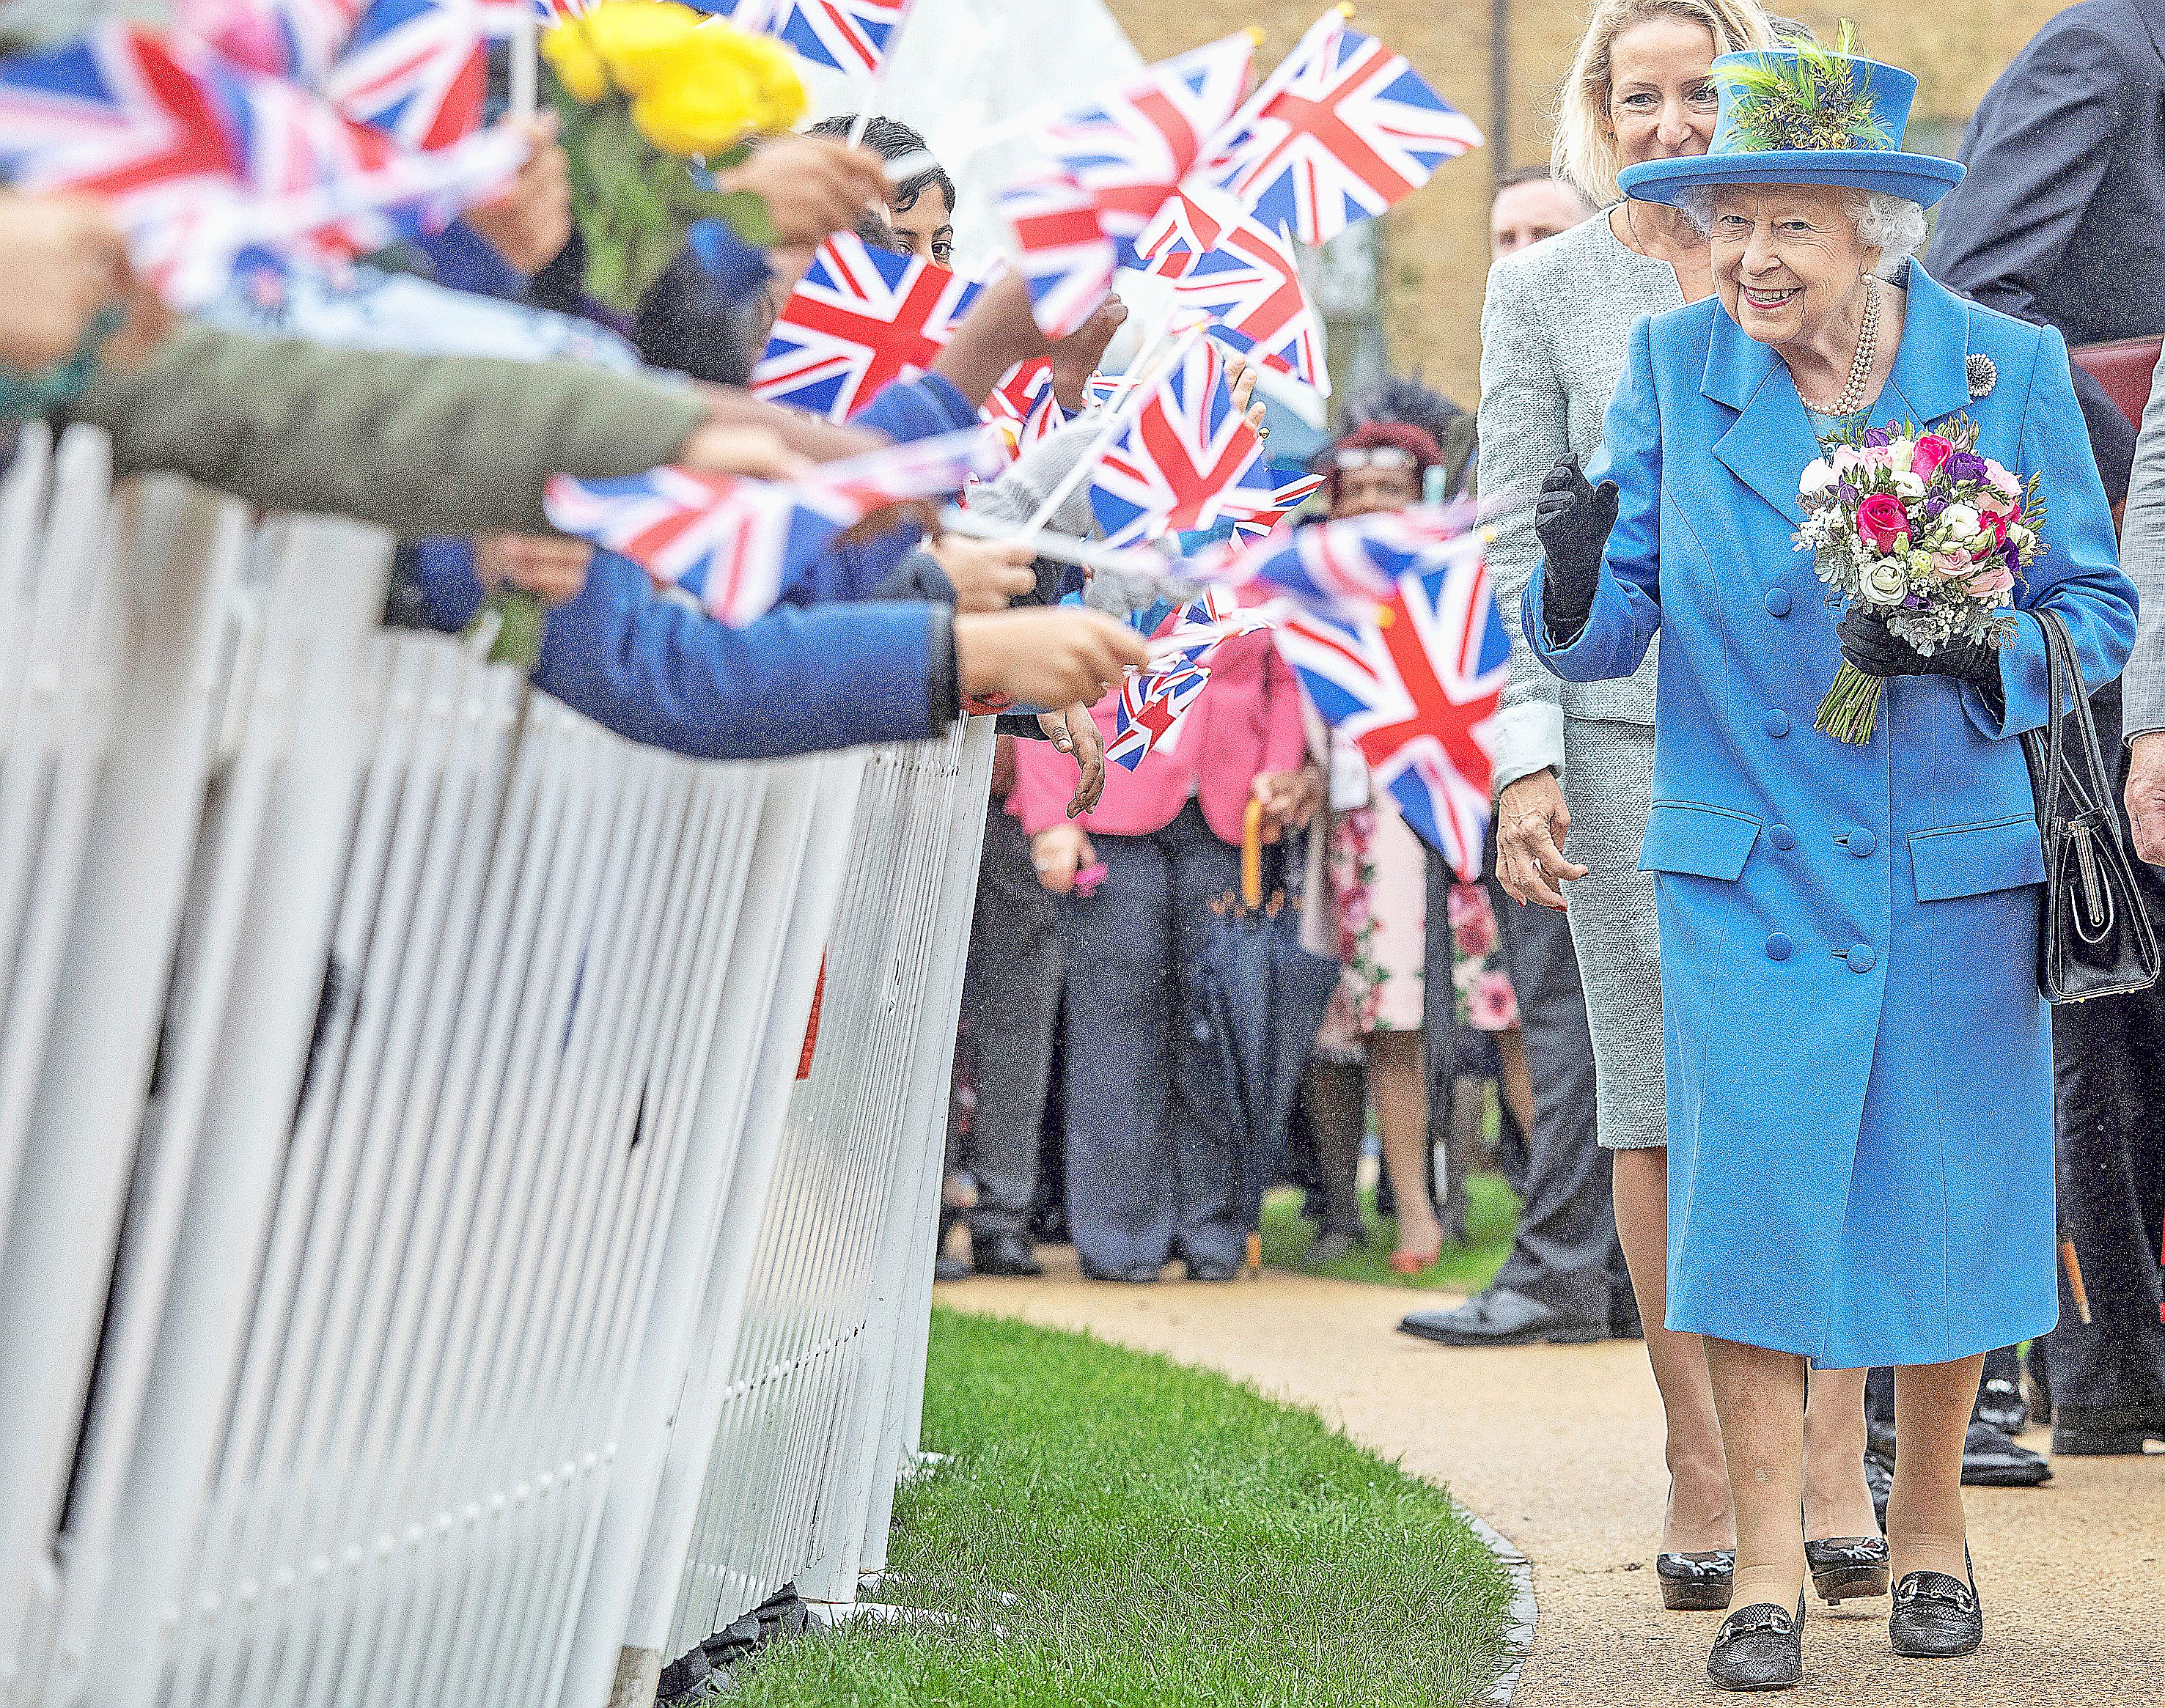 La reine Elizabeth II, 93 ans, vient de reporter plusieurs engagements. Elle pourrait se rendre dans une résidence secondaire, loin de LondresPhoto AFP